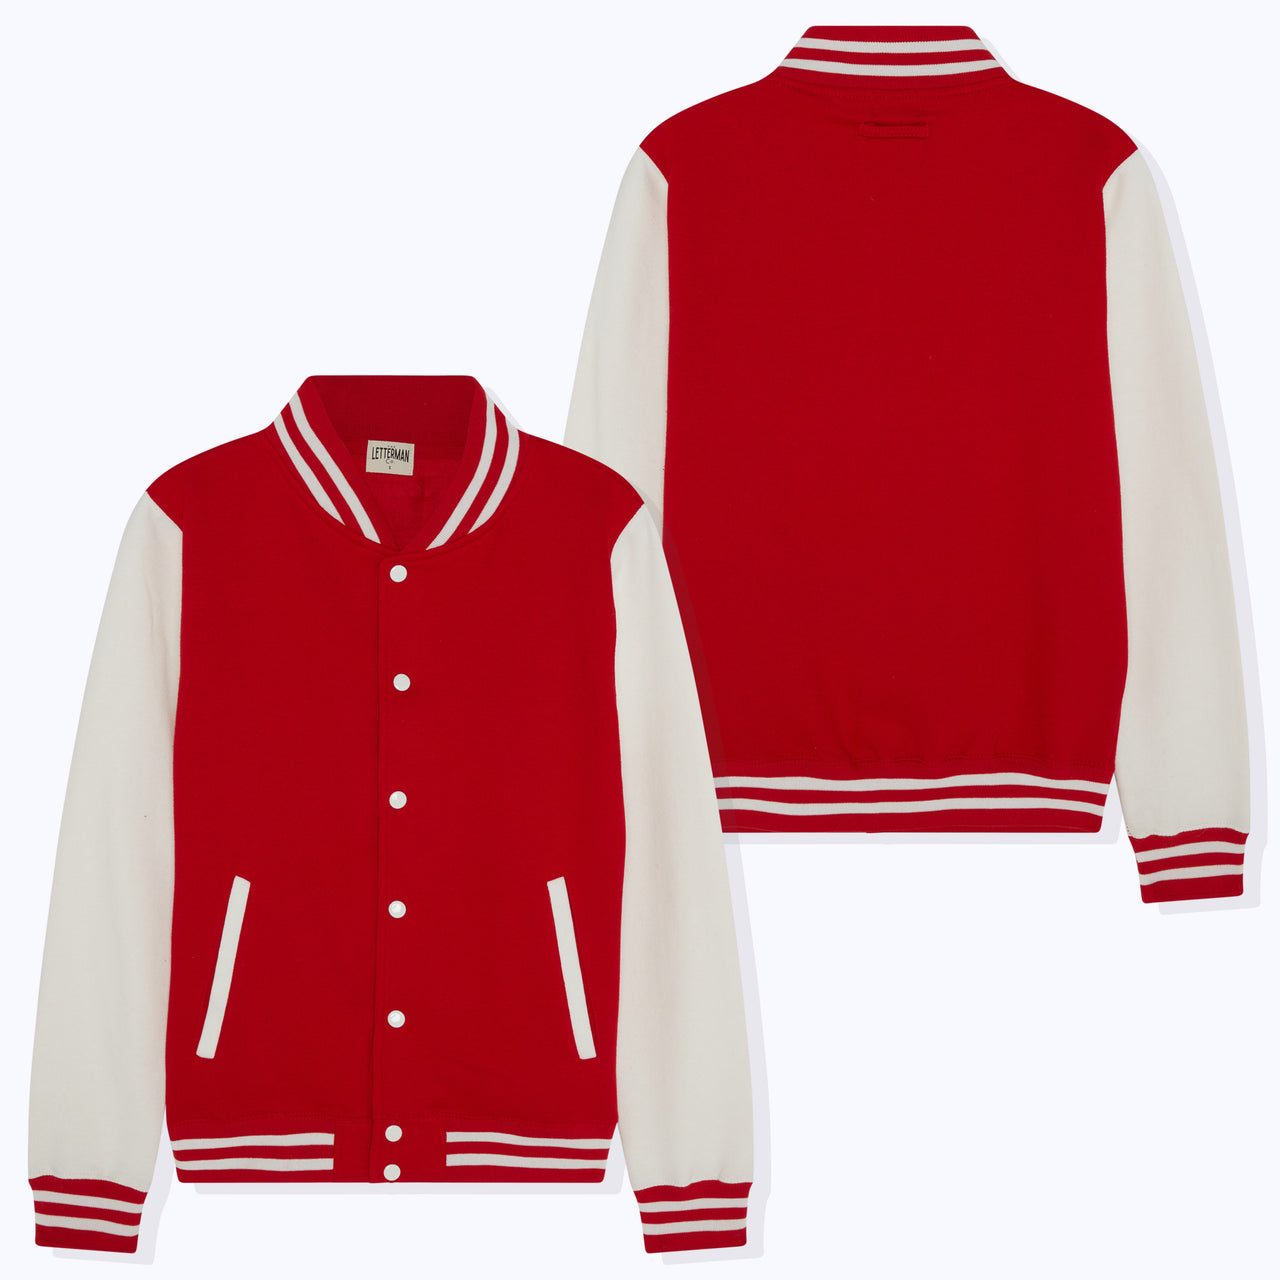 Red-K Varsity Jacket XL / Red White